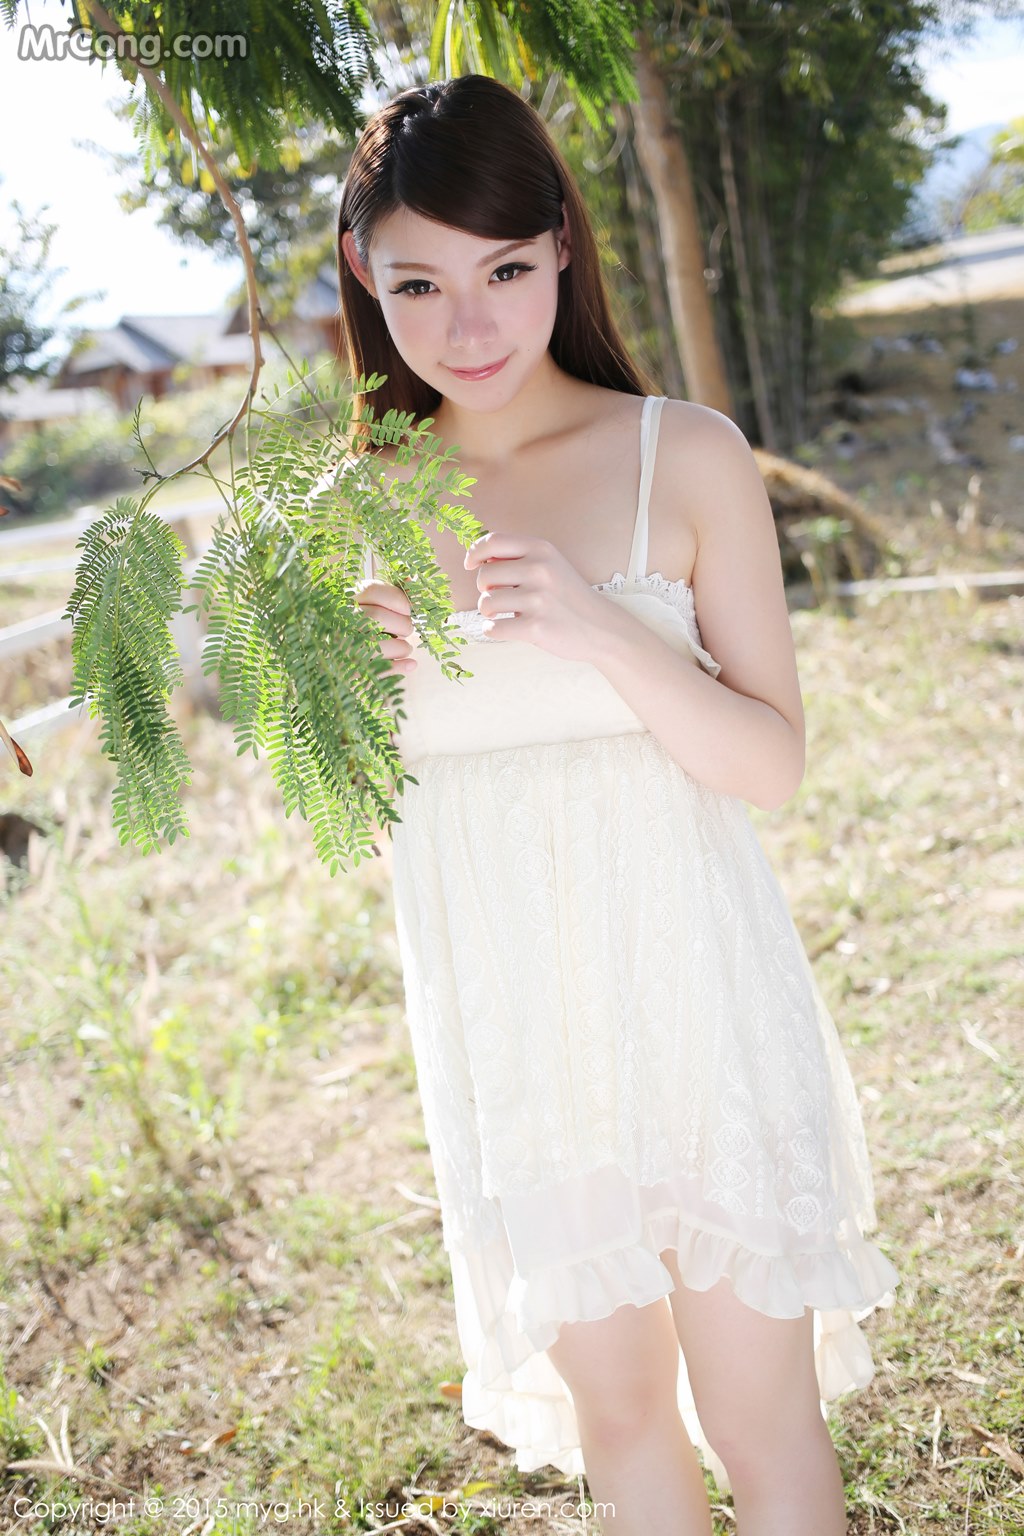 MyGirl Vol.101: Model Mara Jiang (Mara 酱) (43 photos)